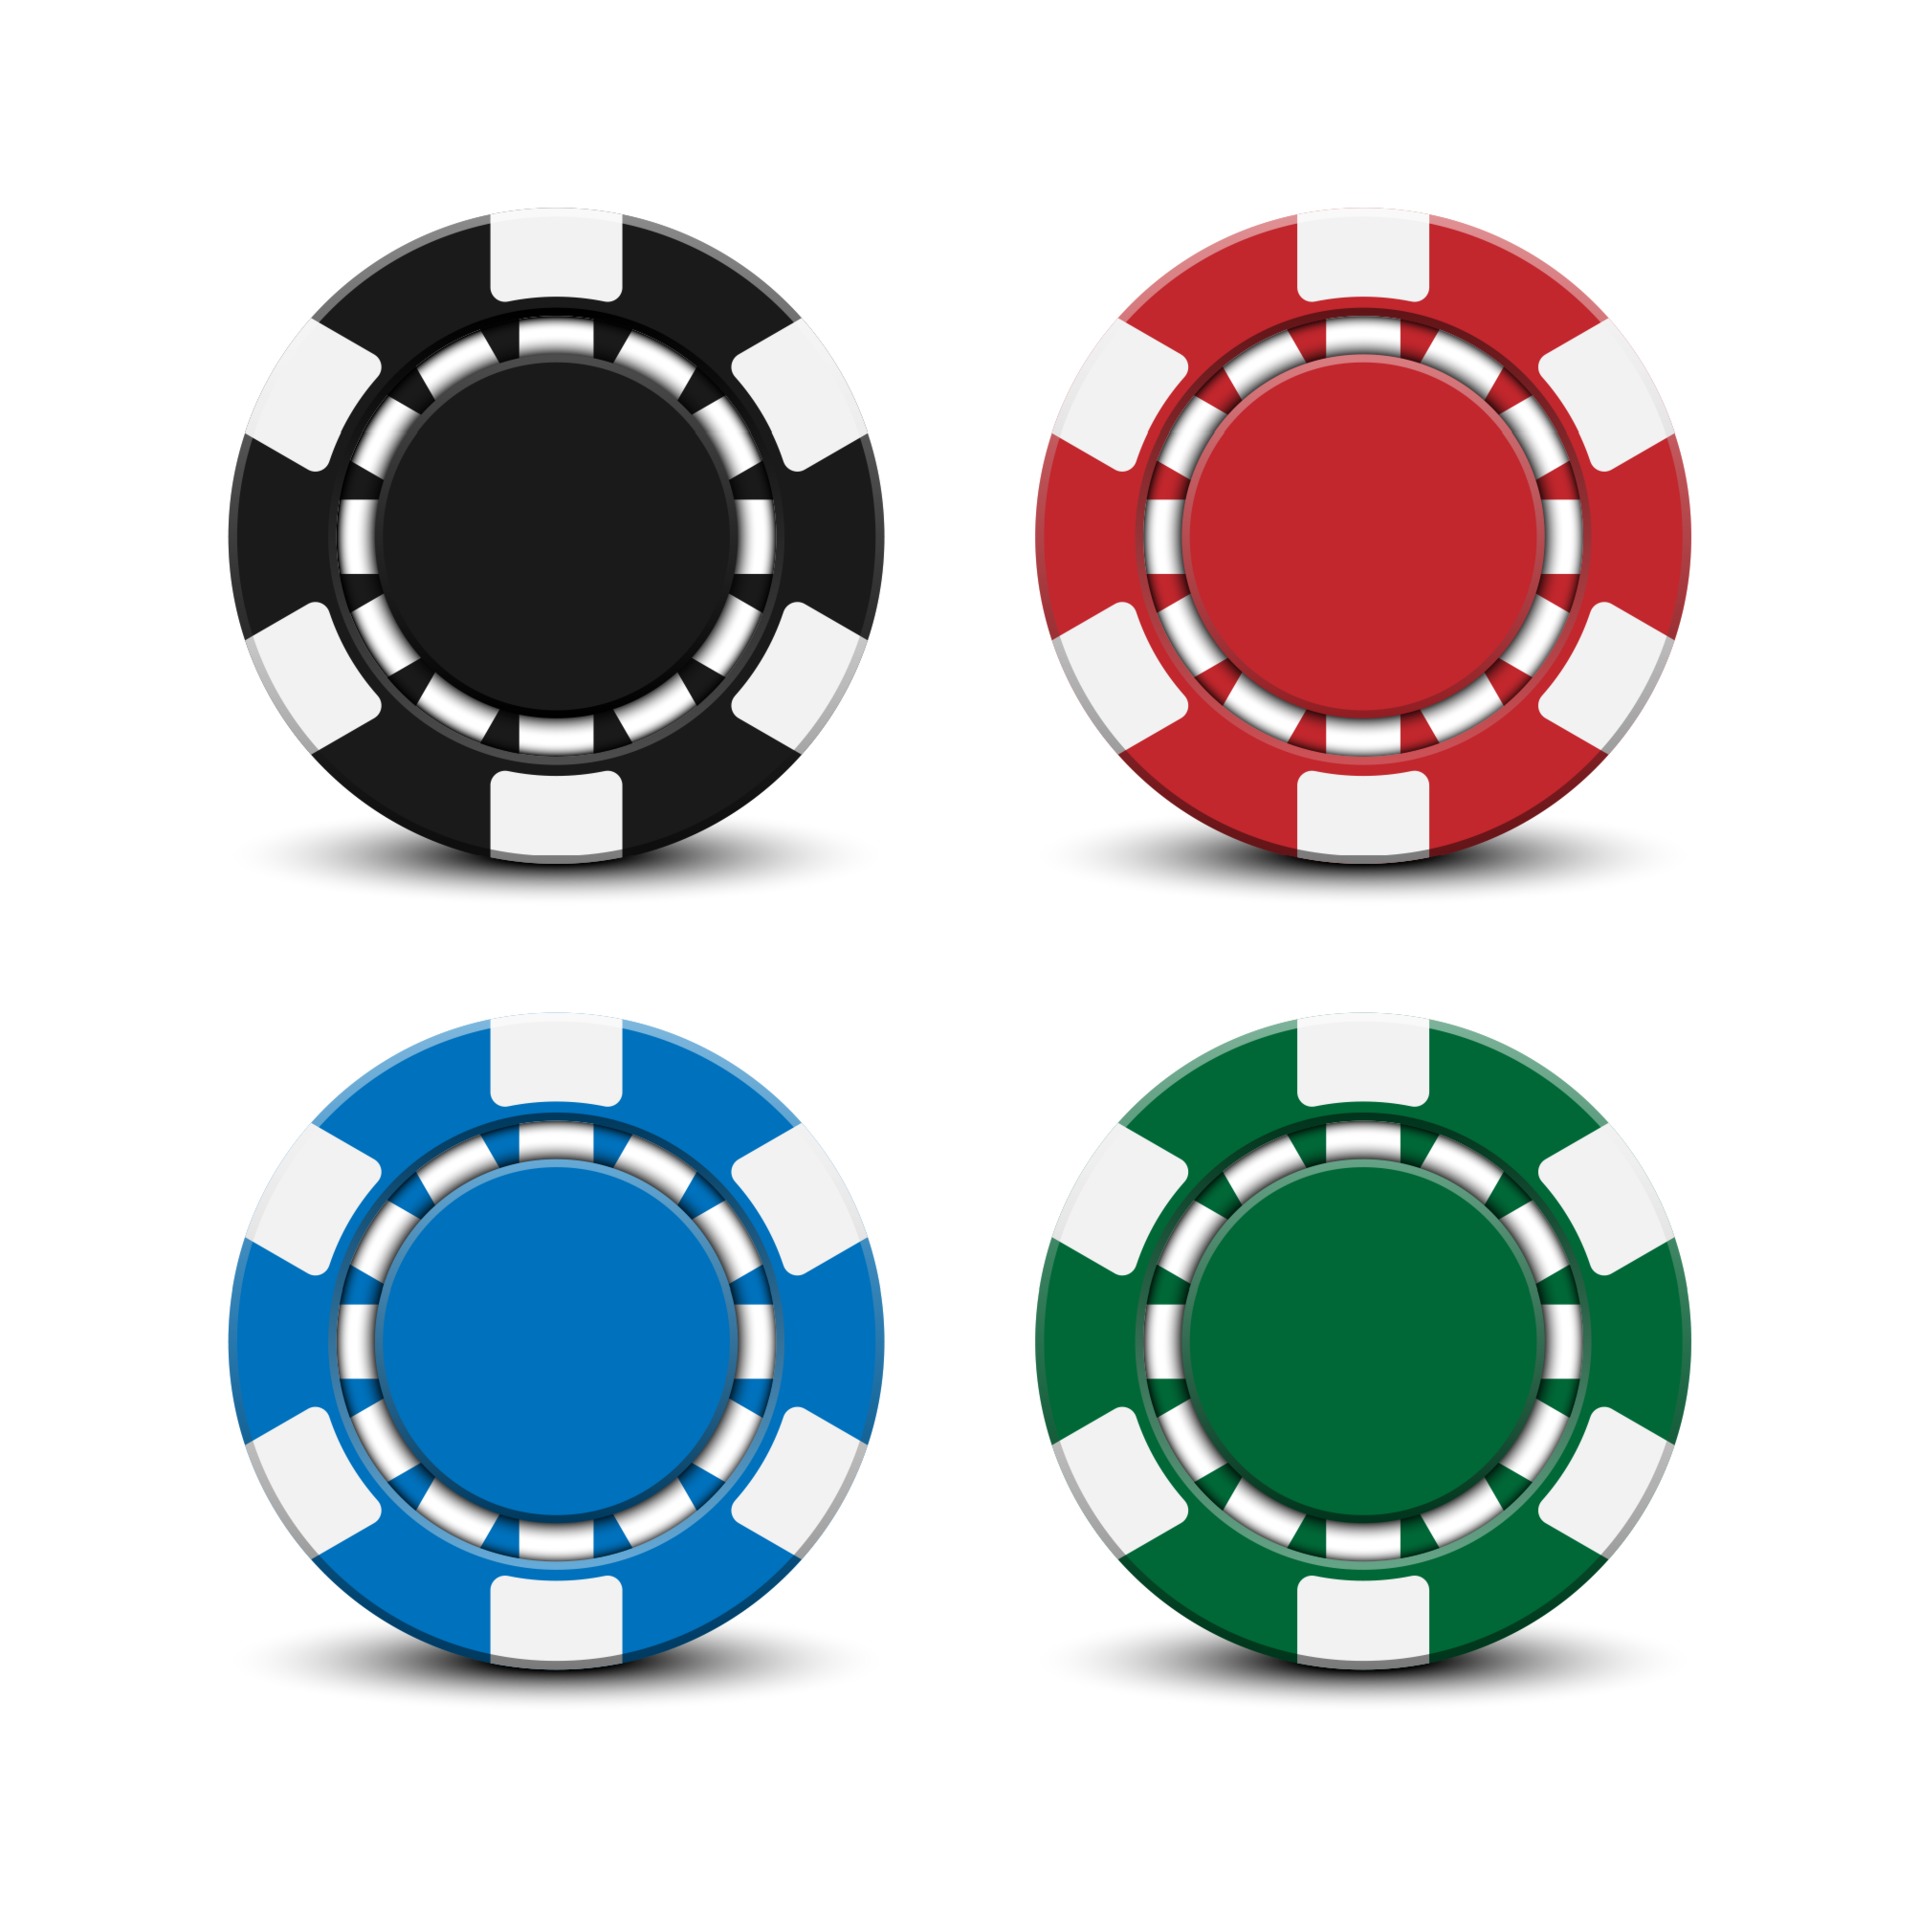 3d-casino-poker-chips-isolated-on-white-background-illustration-free-vector.jpg